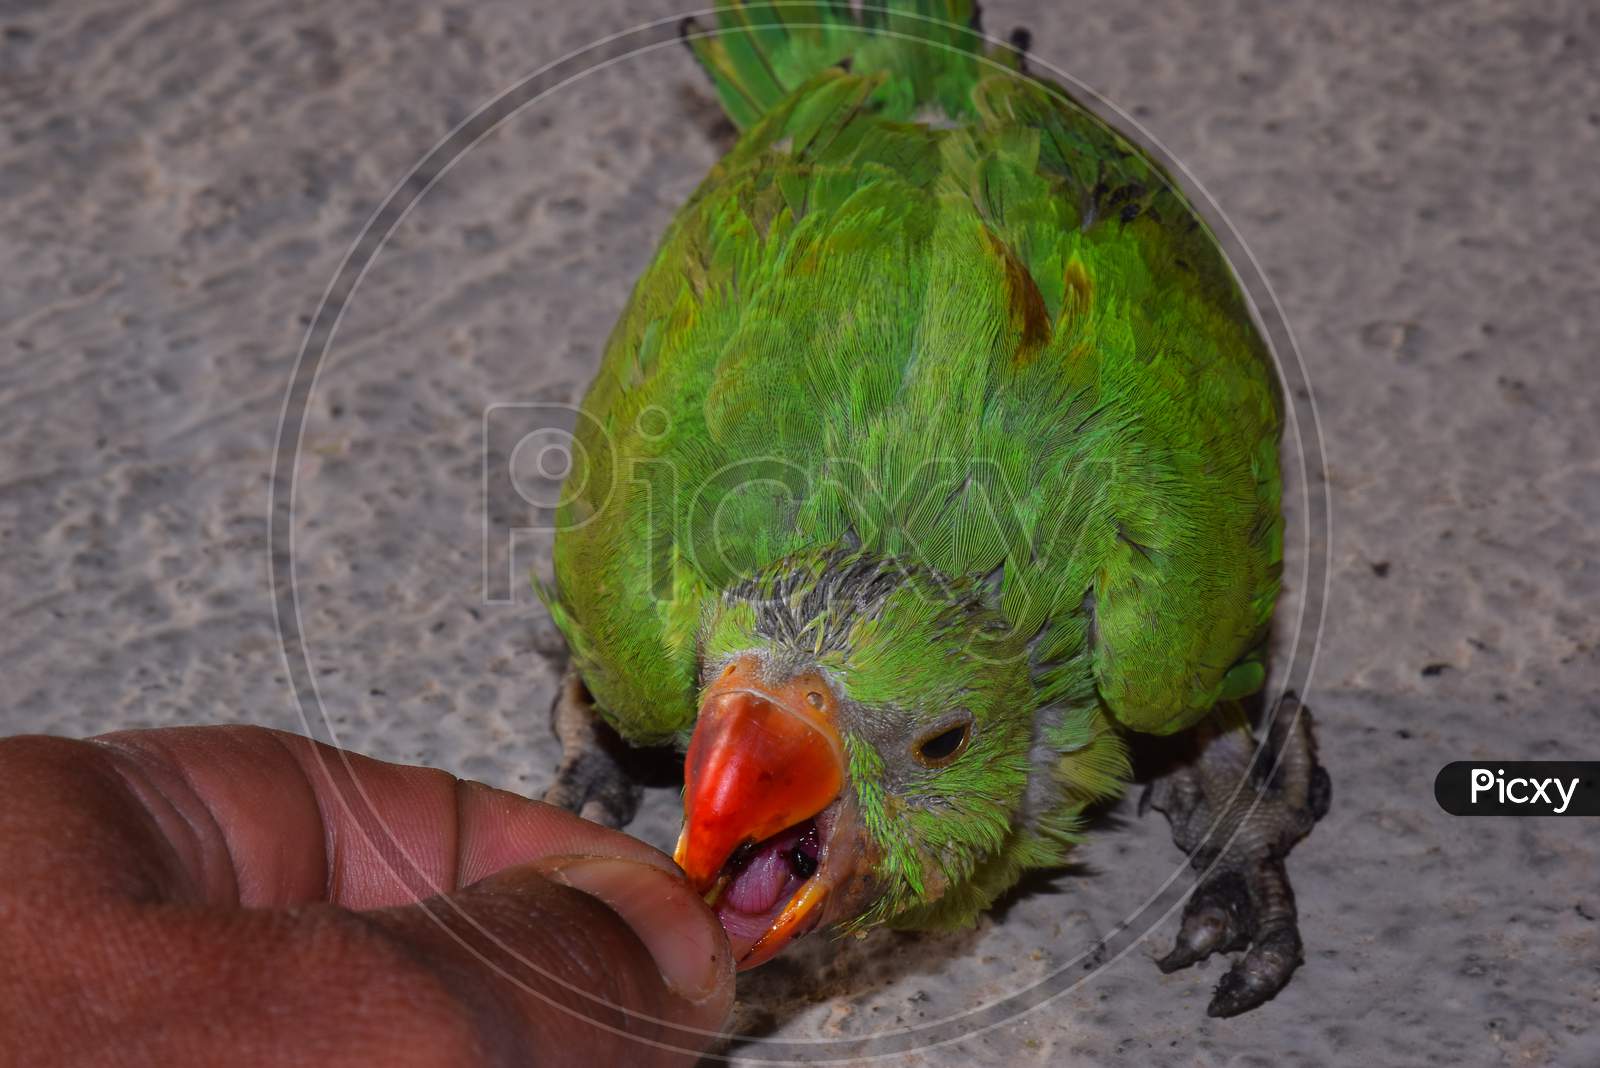 baby green parakeet